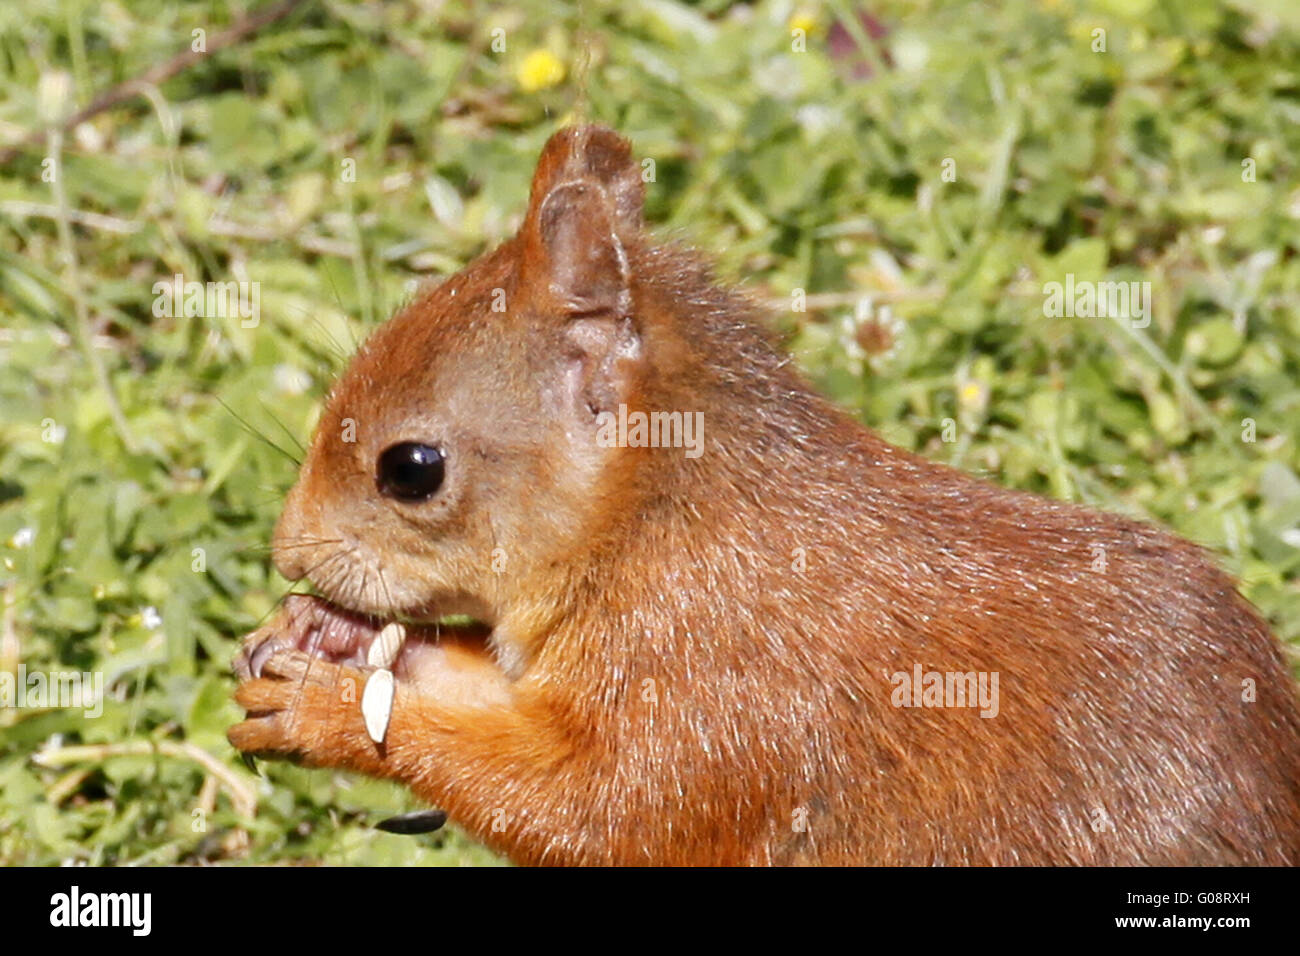 Portrait of Red squirrel / Sciurus vulgaris eating Stock Photo